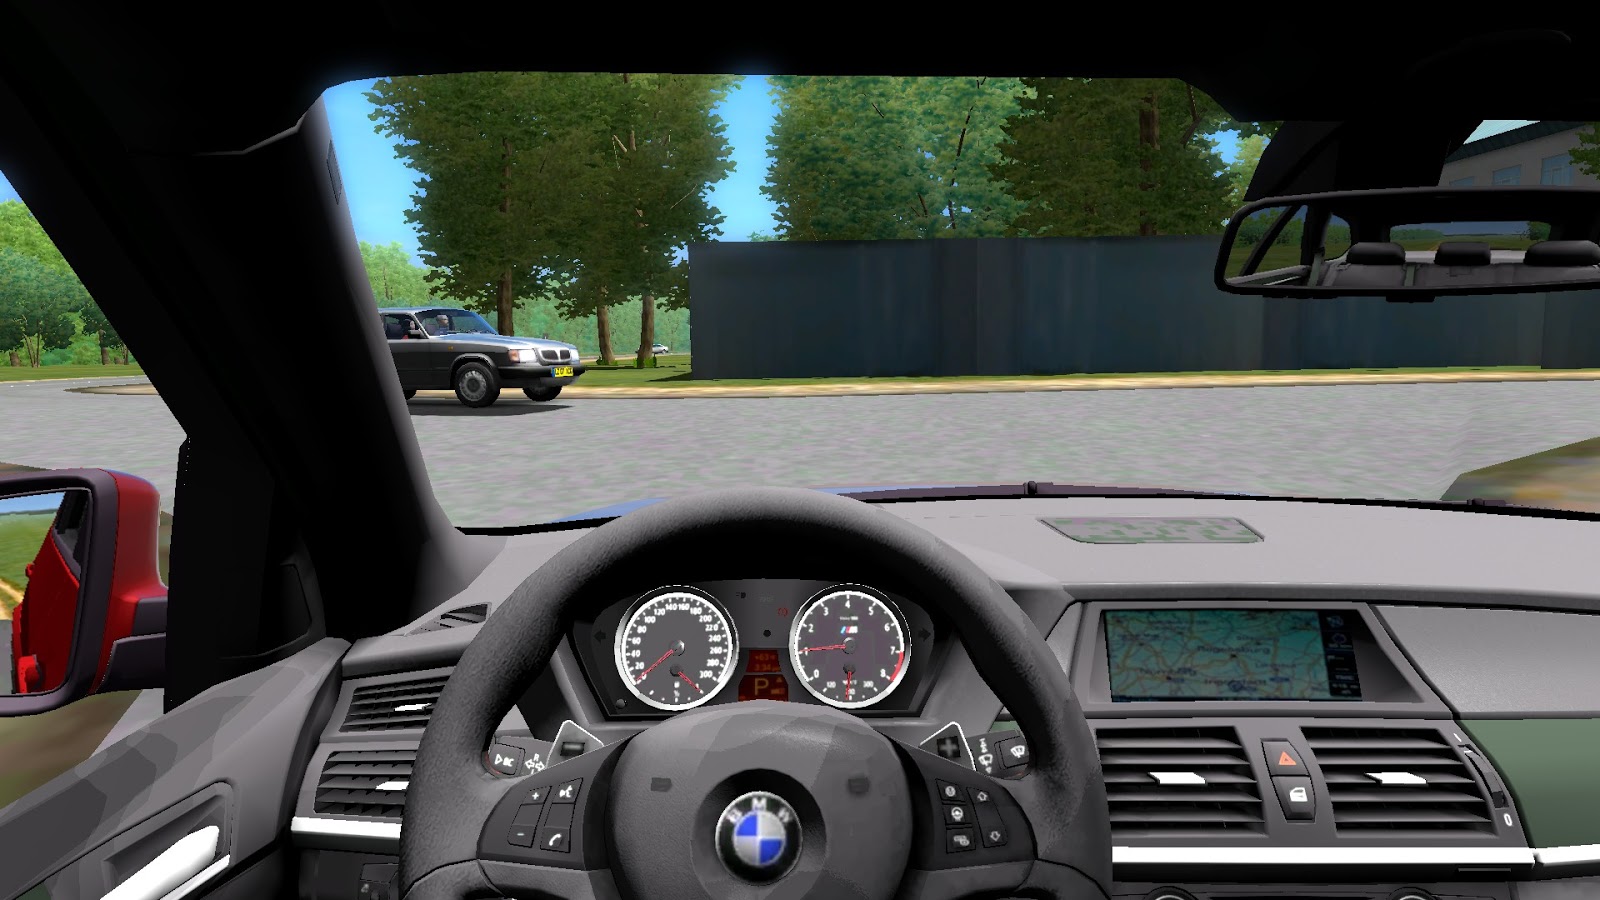 Есть бмв игры. City car Driving BMW x5m. BMW x3 f25 City car Driving. Симулятор БМВ м5. БМВ х5 кар драйвинг симулятор.